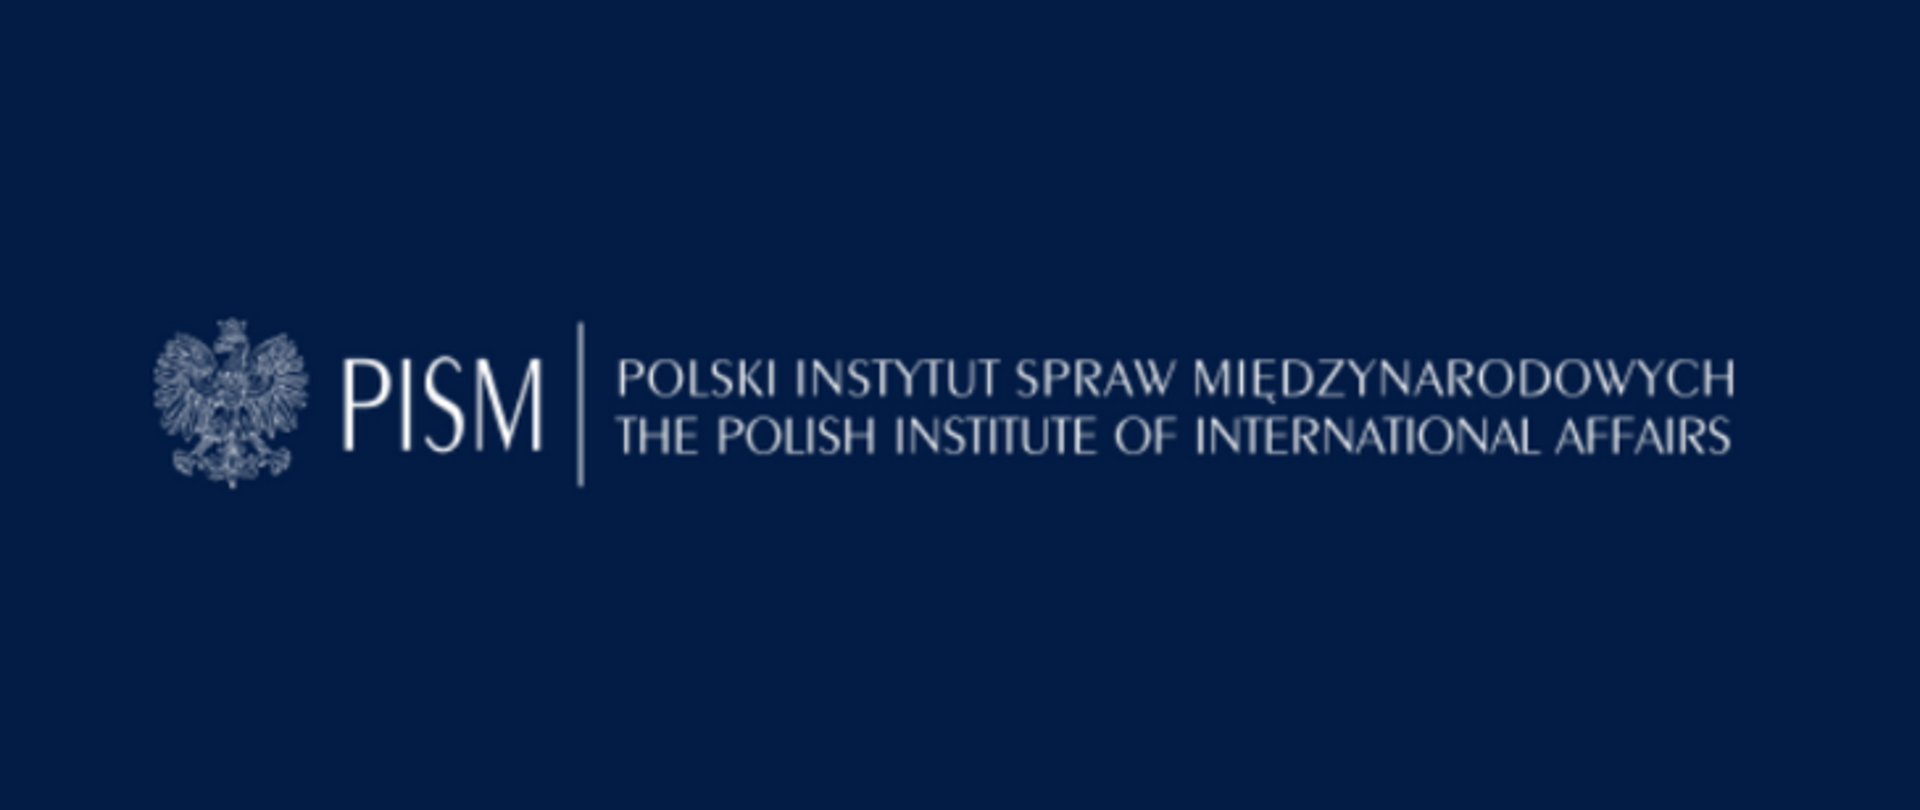 Minister Spraw Zagranicznych ogłosił konkurs na stanowisko Dyrektora Polskiego Instytutu Spraw Międzynarodowych (PISM) – jednostki nadzorowanej przez MSZ. 